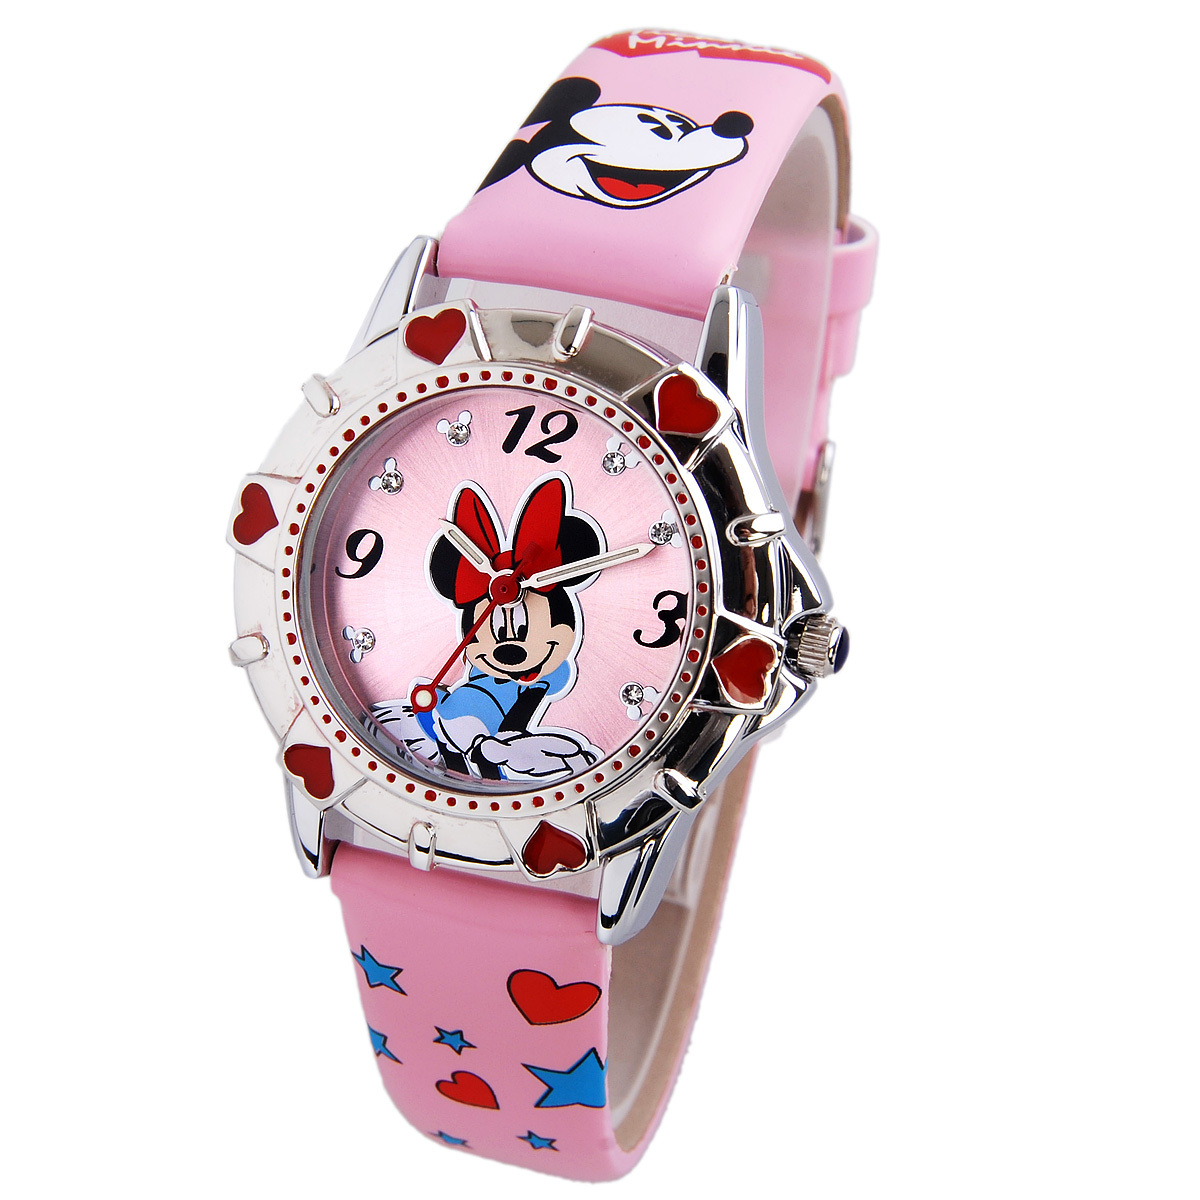 正品迪士尼儿童手表 大耳朵创意设计可爱女孩手表 小学生表报价/最低价_易购频道